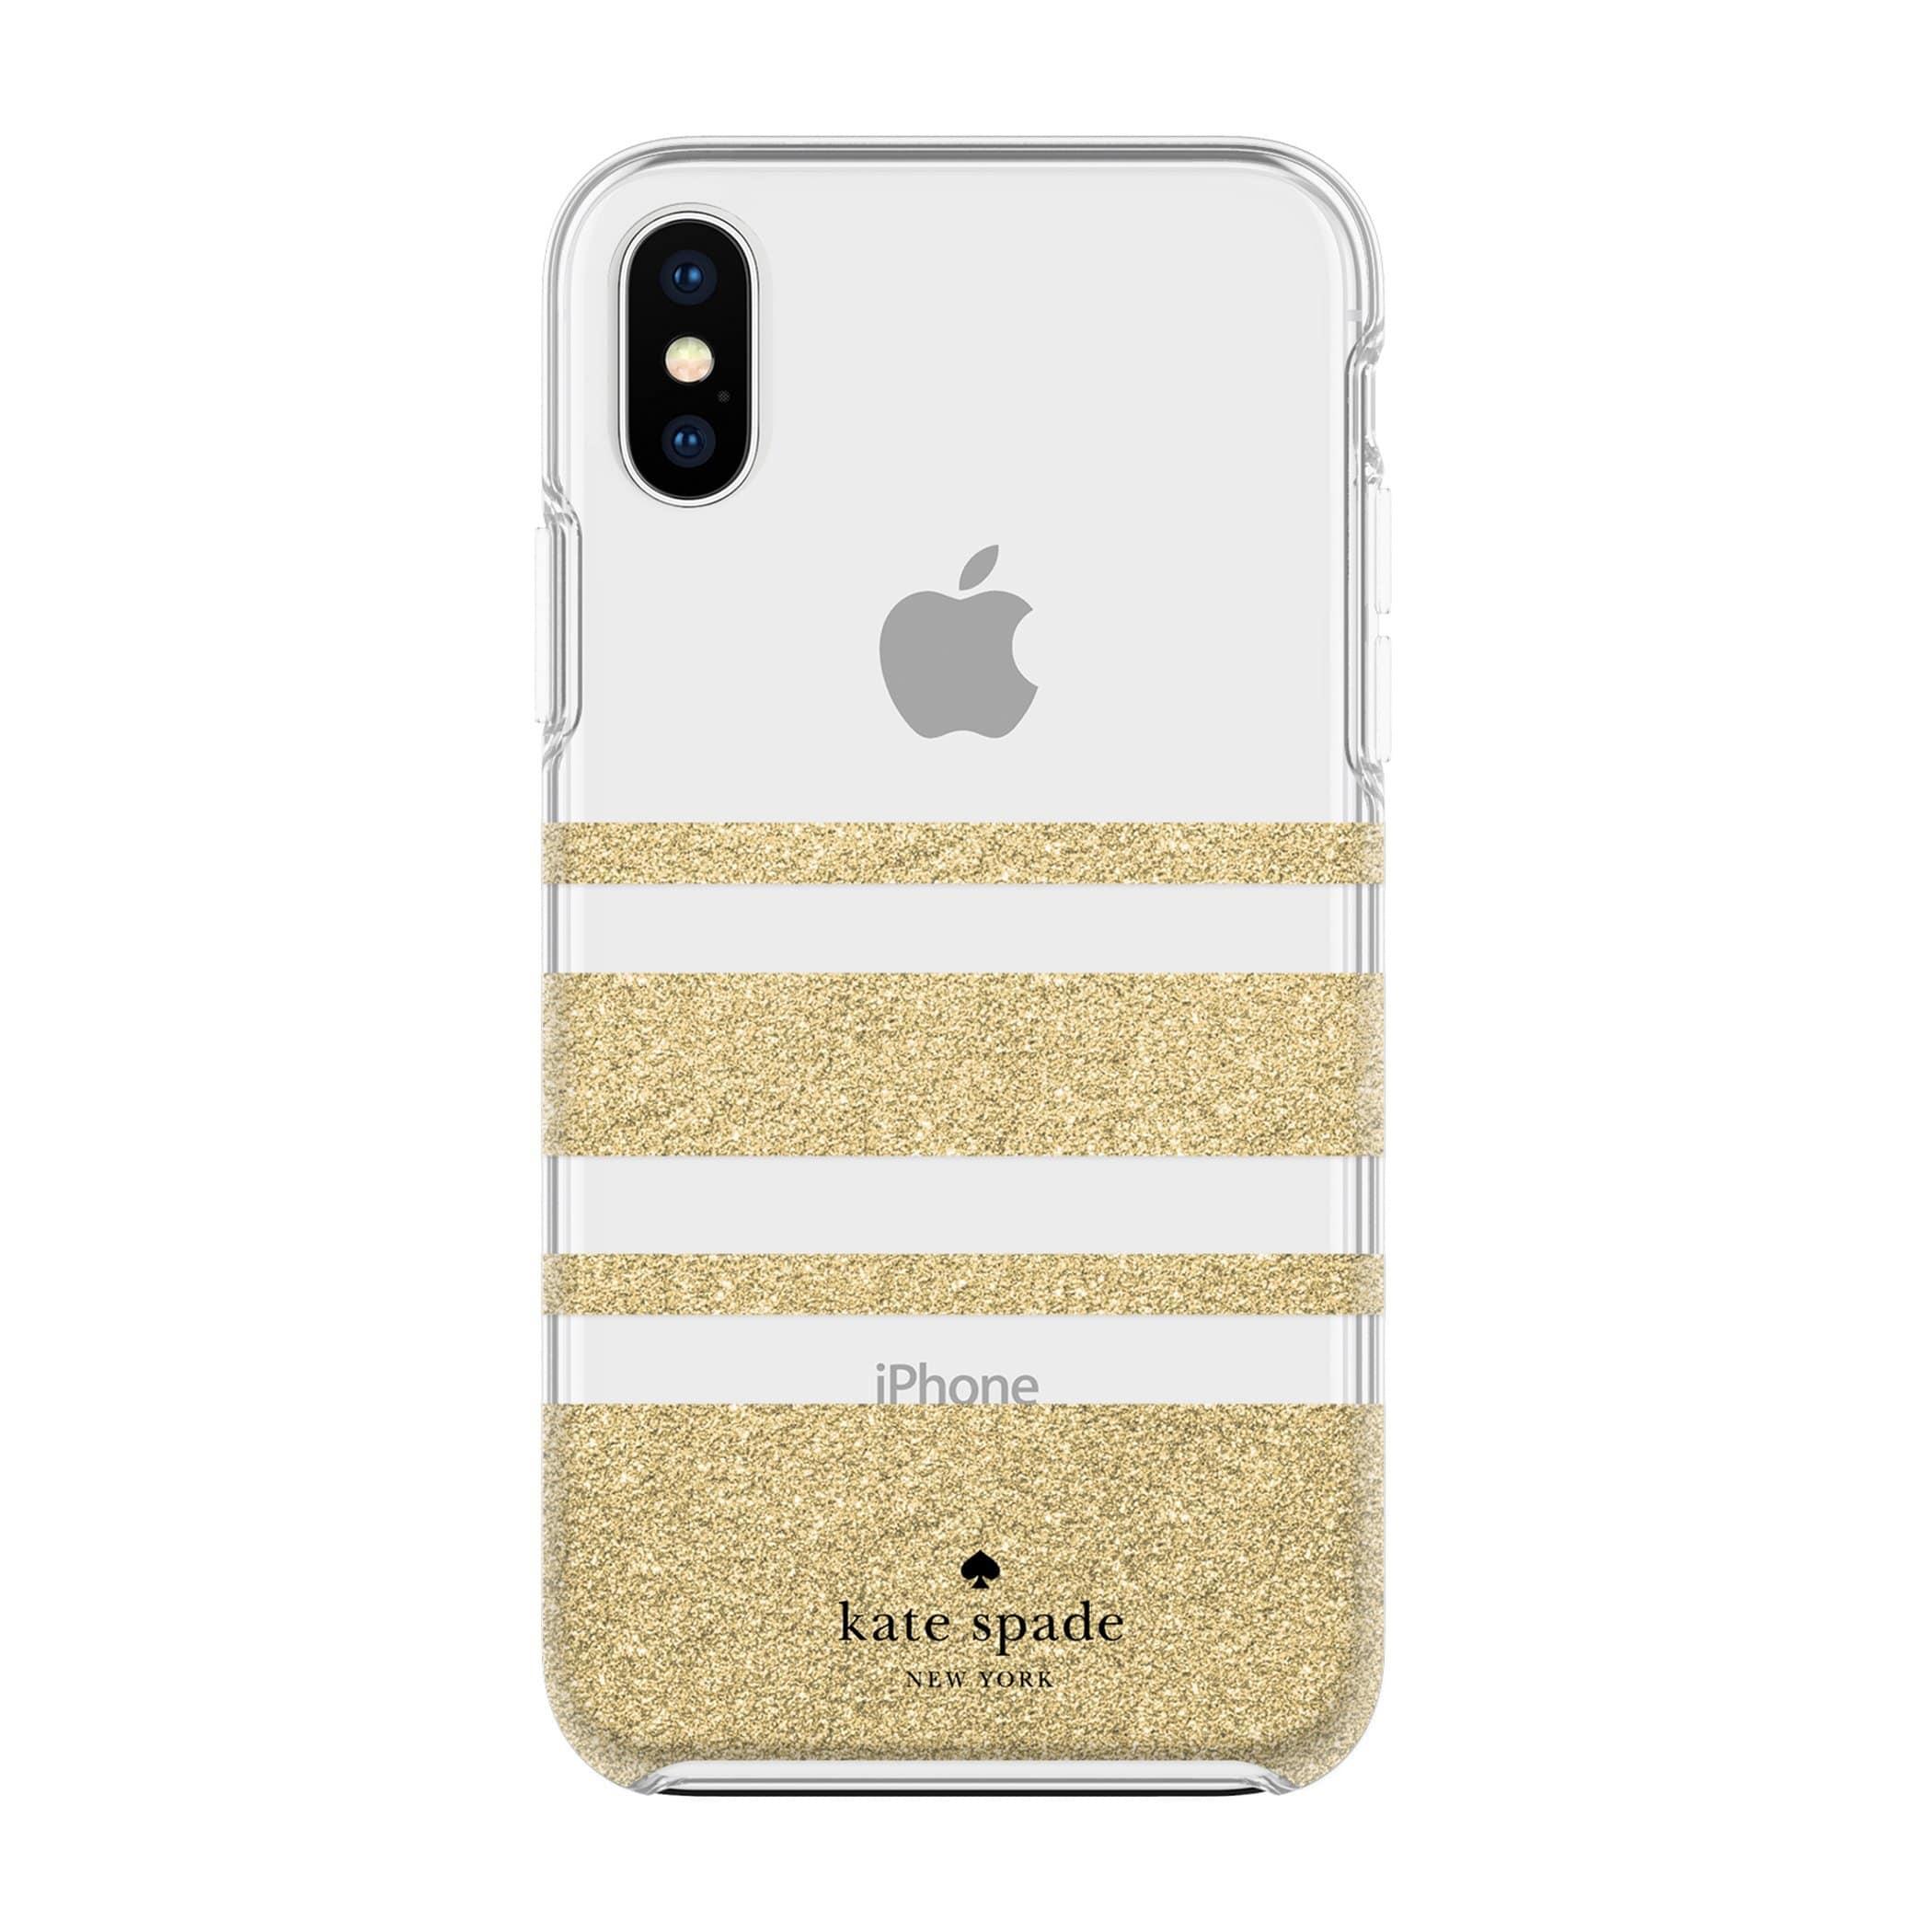 كفر حماية آيفون KATE SPADE NEW YORK Protective Hardshell Case Charlotte Stripe For iPhone XS/X